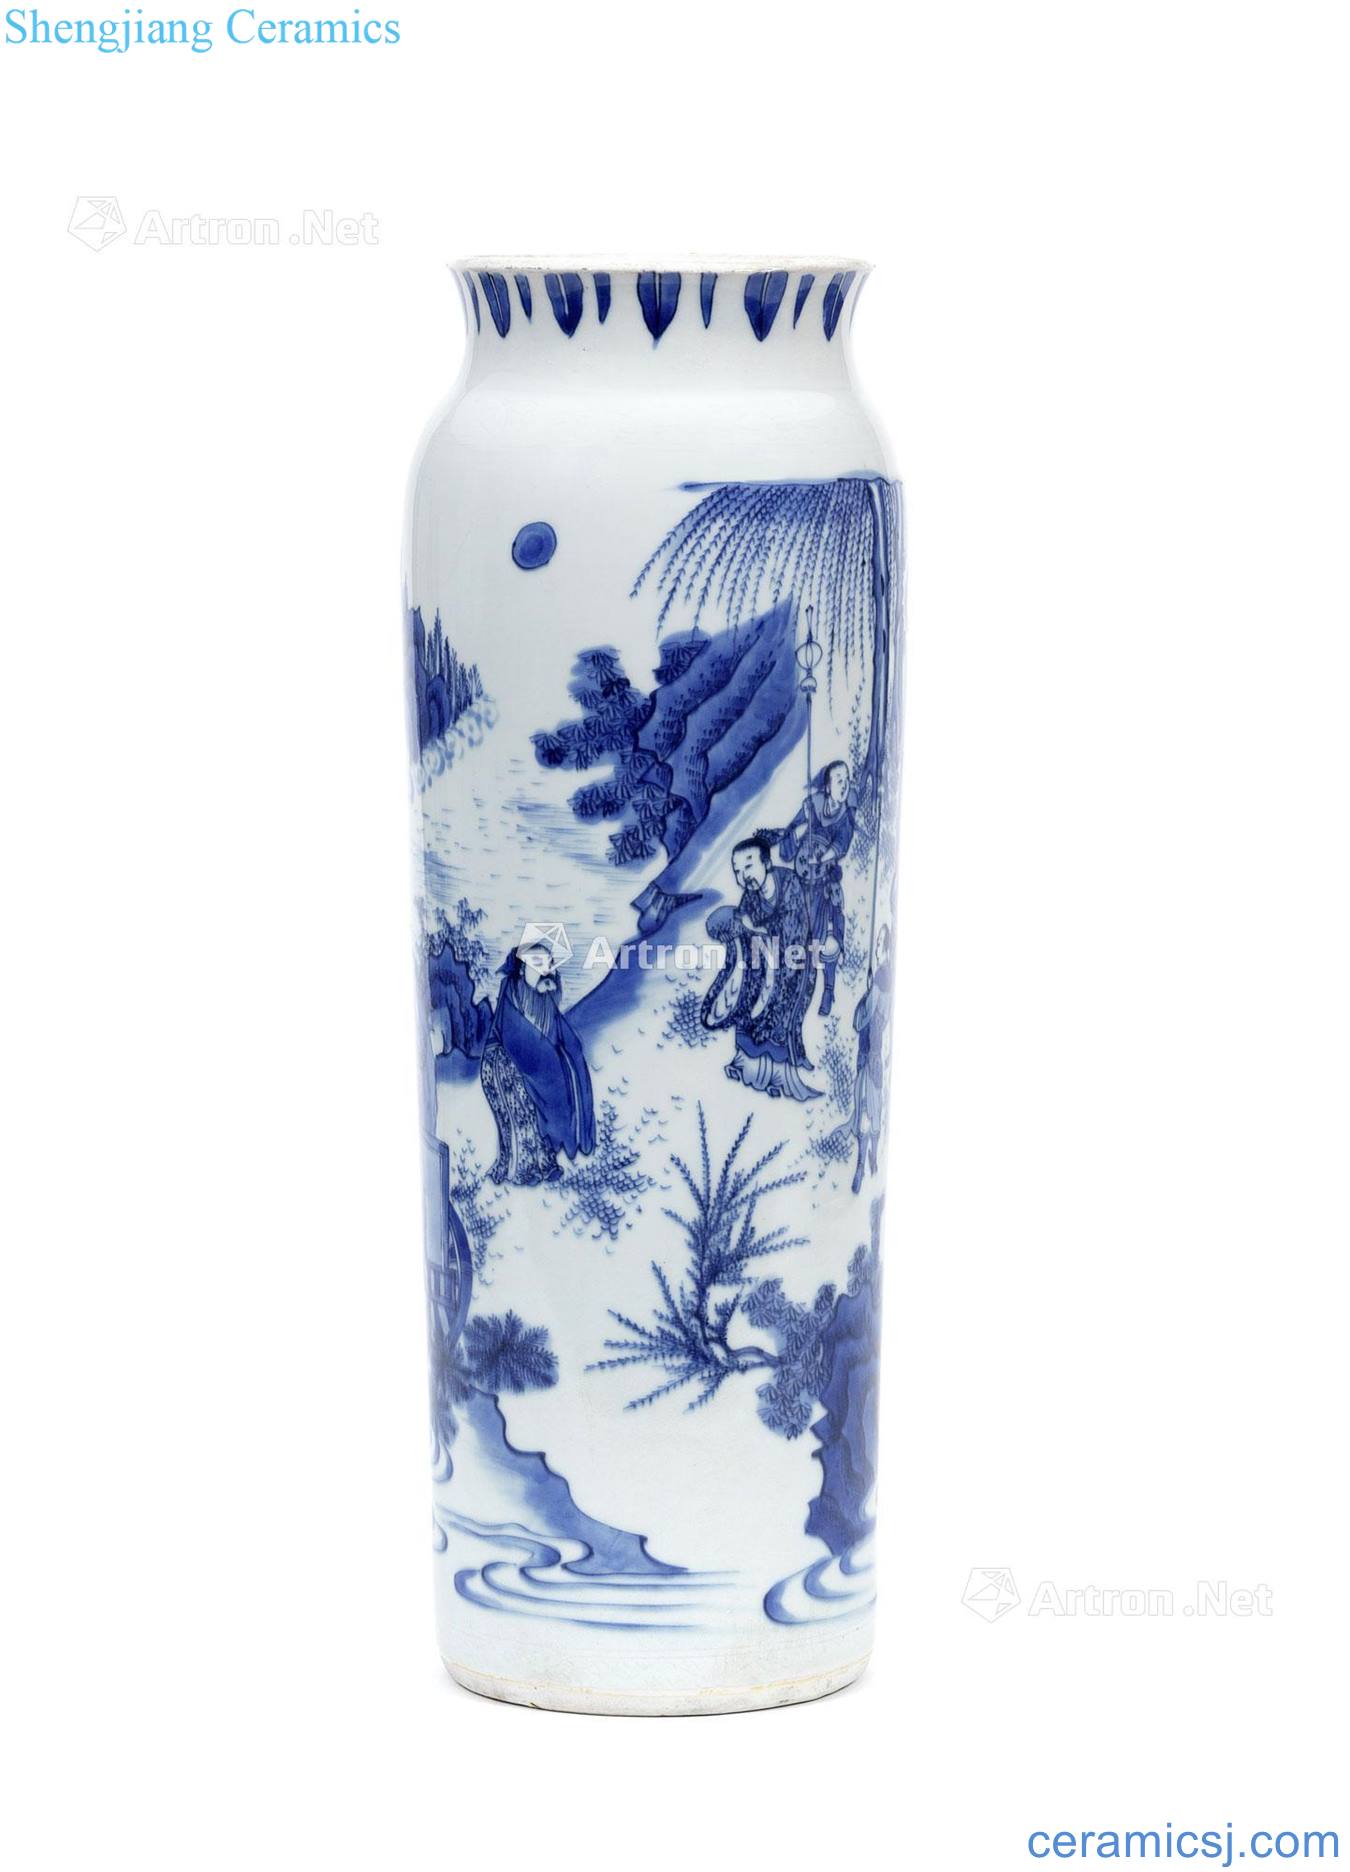 Blue and white weibin visit xian Ming chongzhen figure bottles